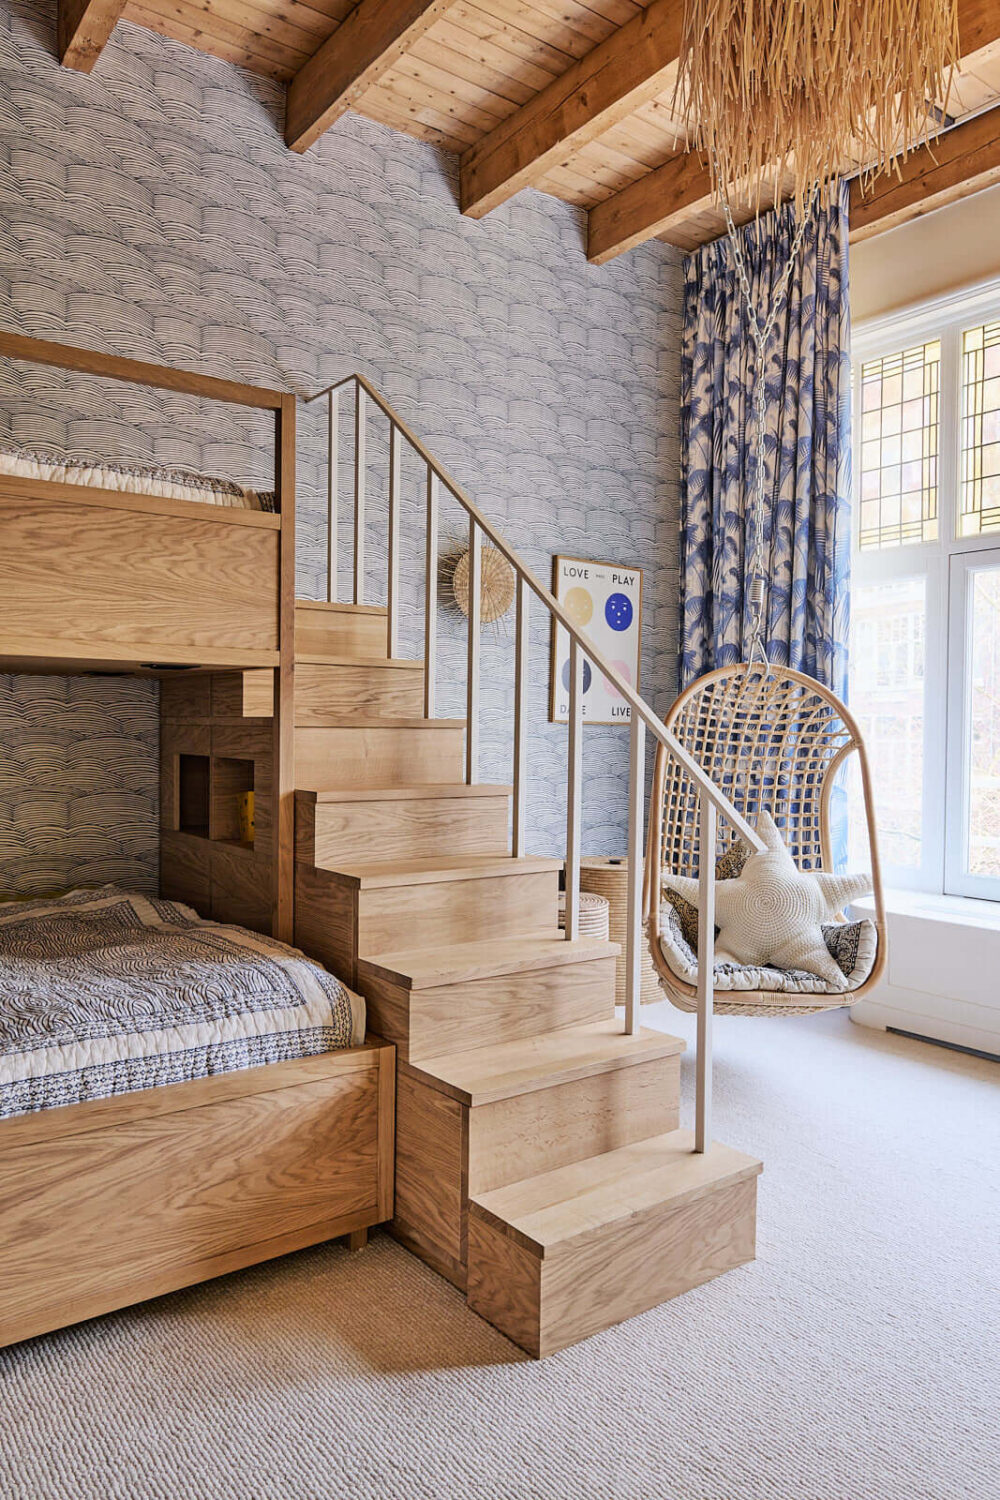 kids-bedroom-bunk-beds-villa-amsterdam-nordroom